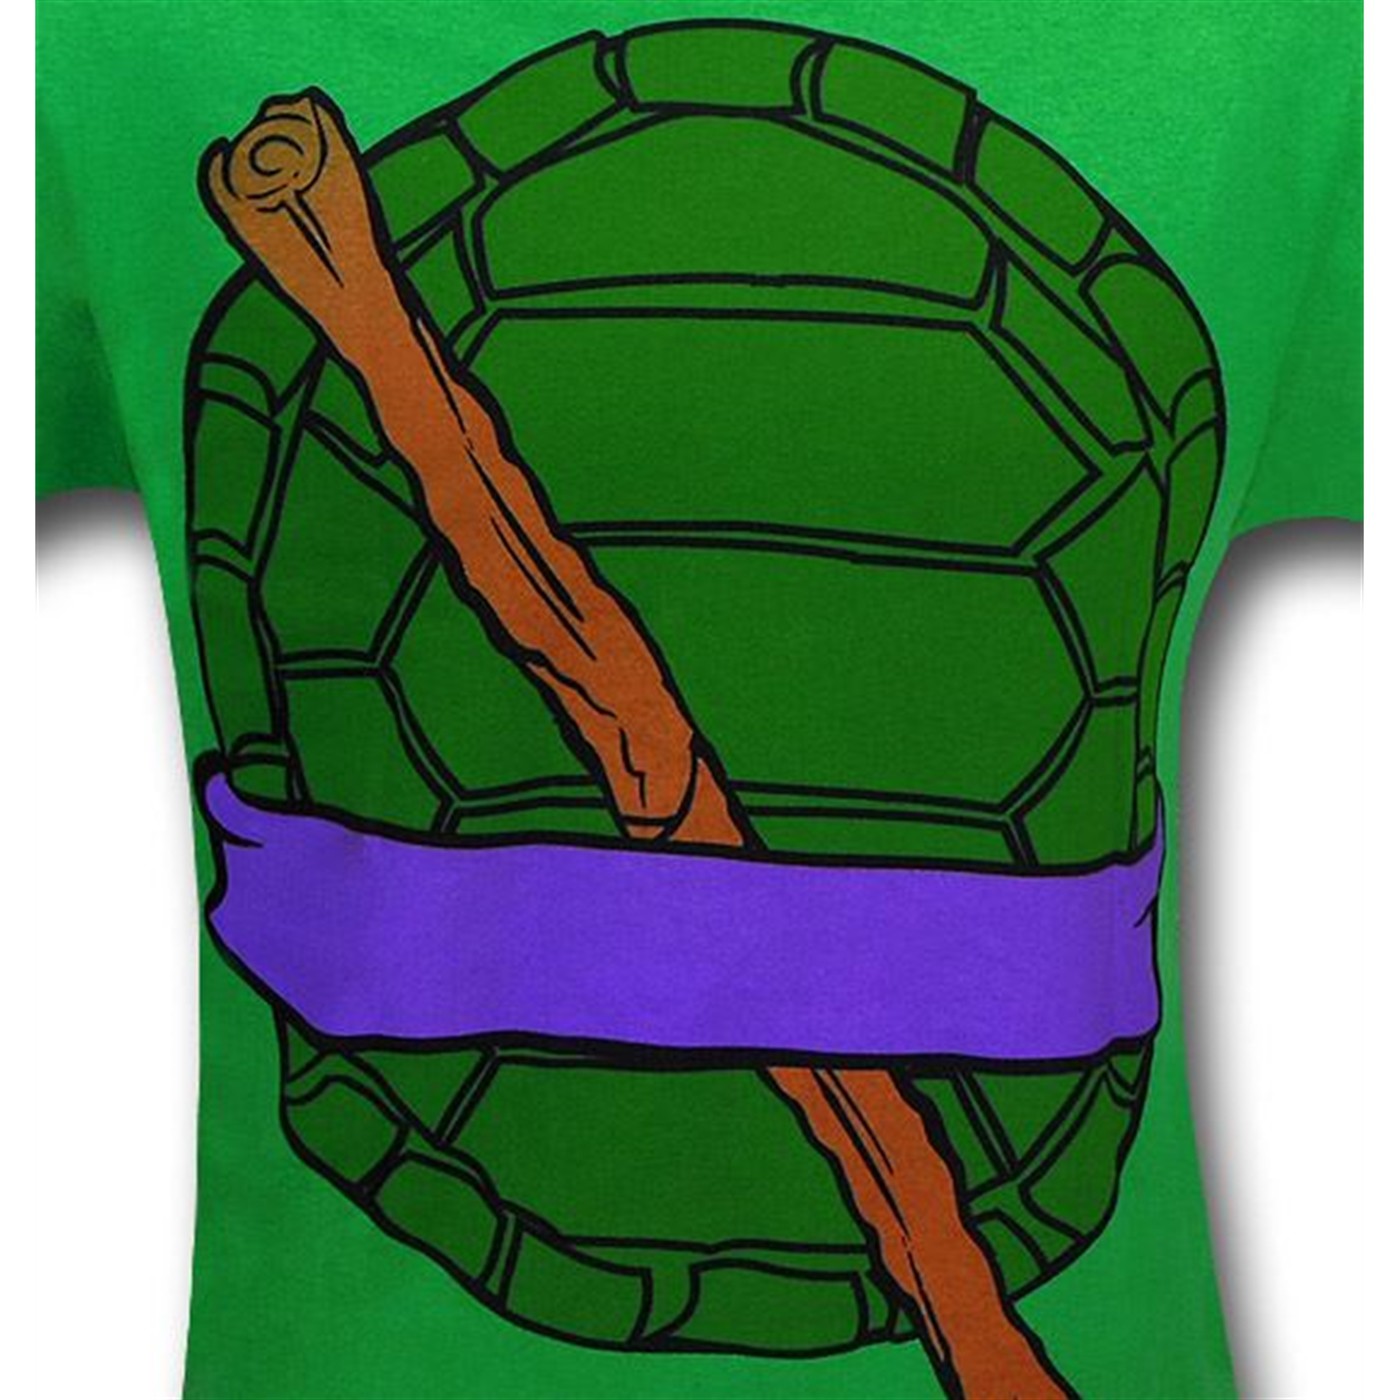 TMNT Donatello Costume T-Shirt